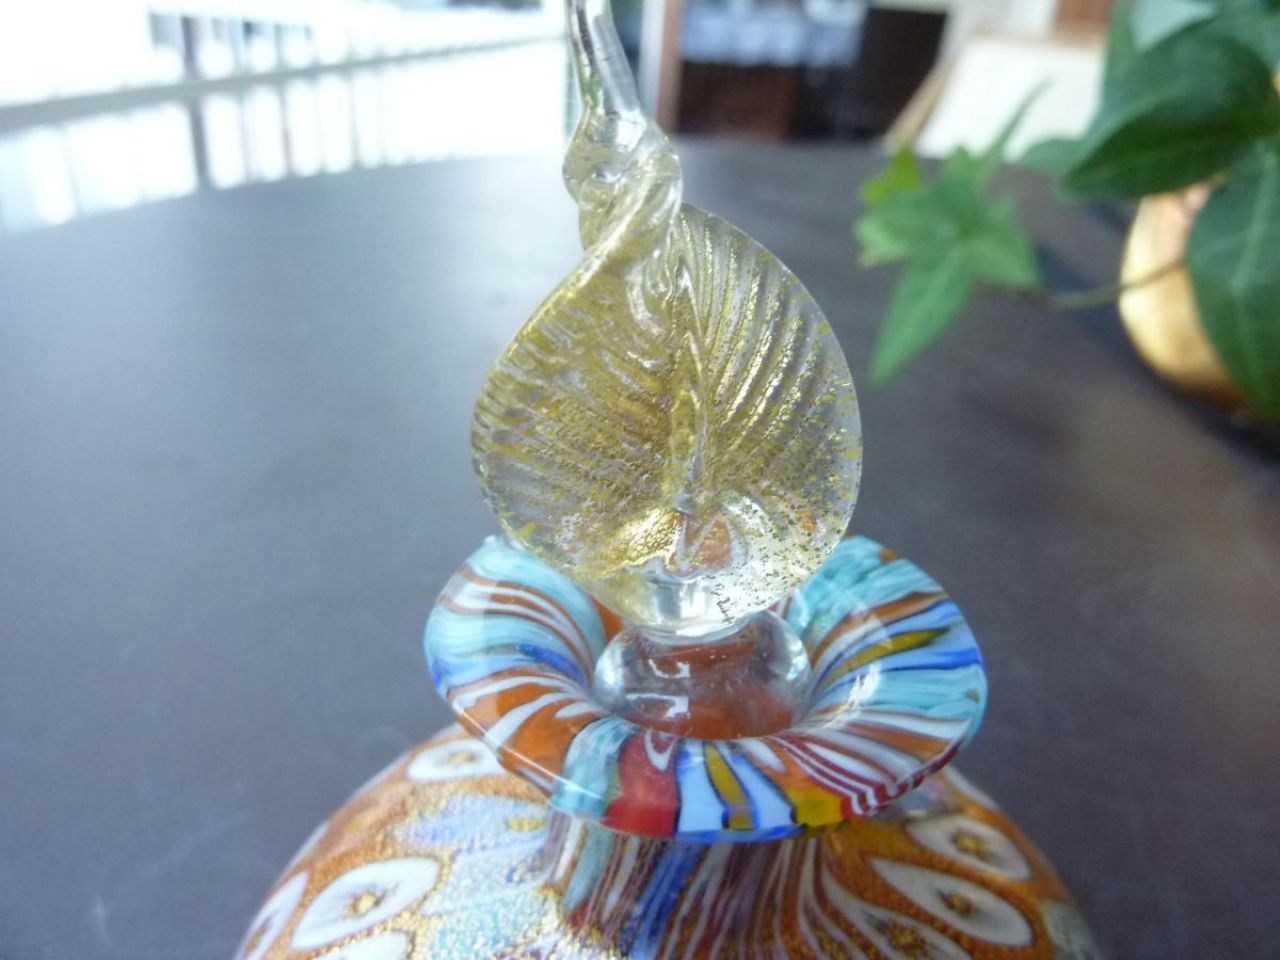 flacon à parfum en verre millefleur, travail traditionnel du verre à Murano, recouvert d'une fine feuille d'or